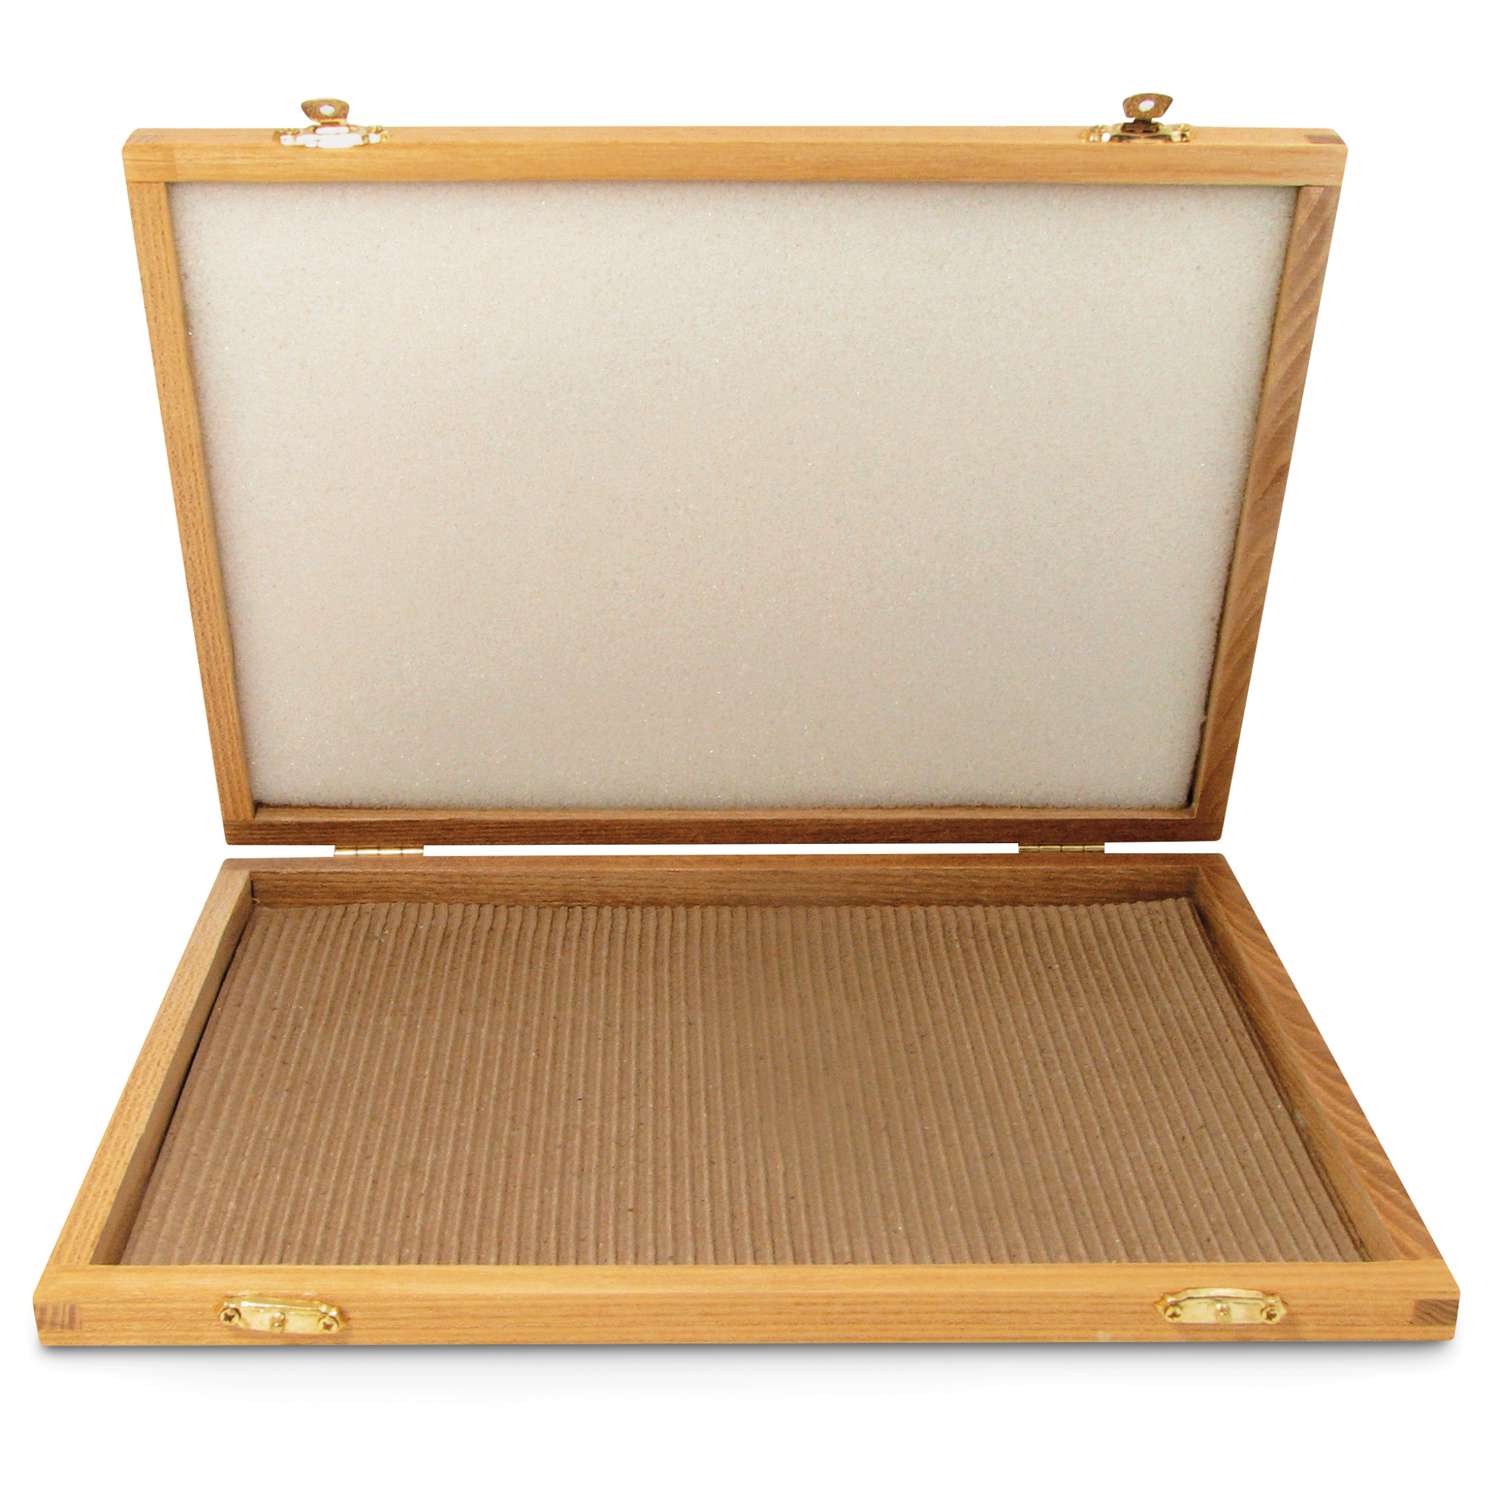 Boîte en bois vide pour accessoires 13 x 36 x 12cm Divers chez